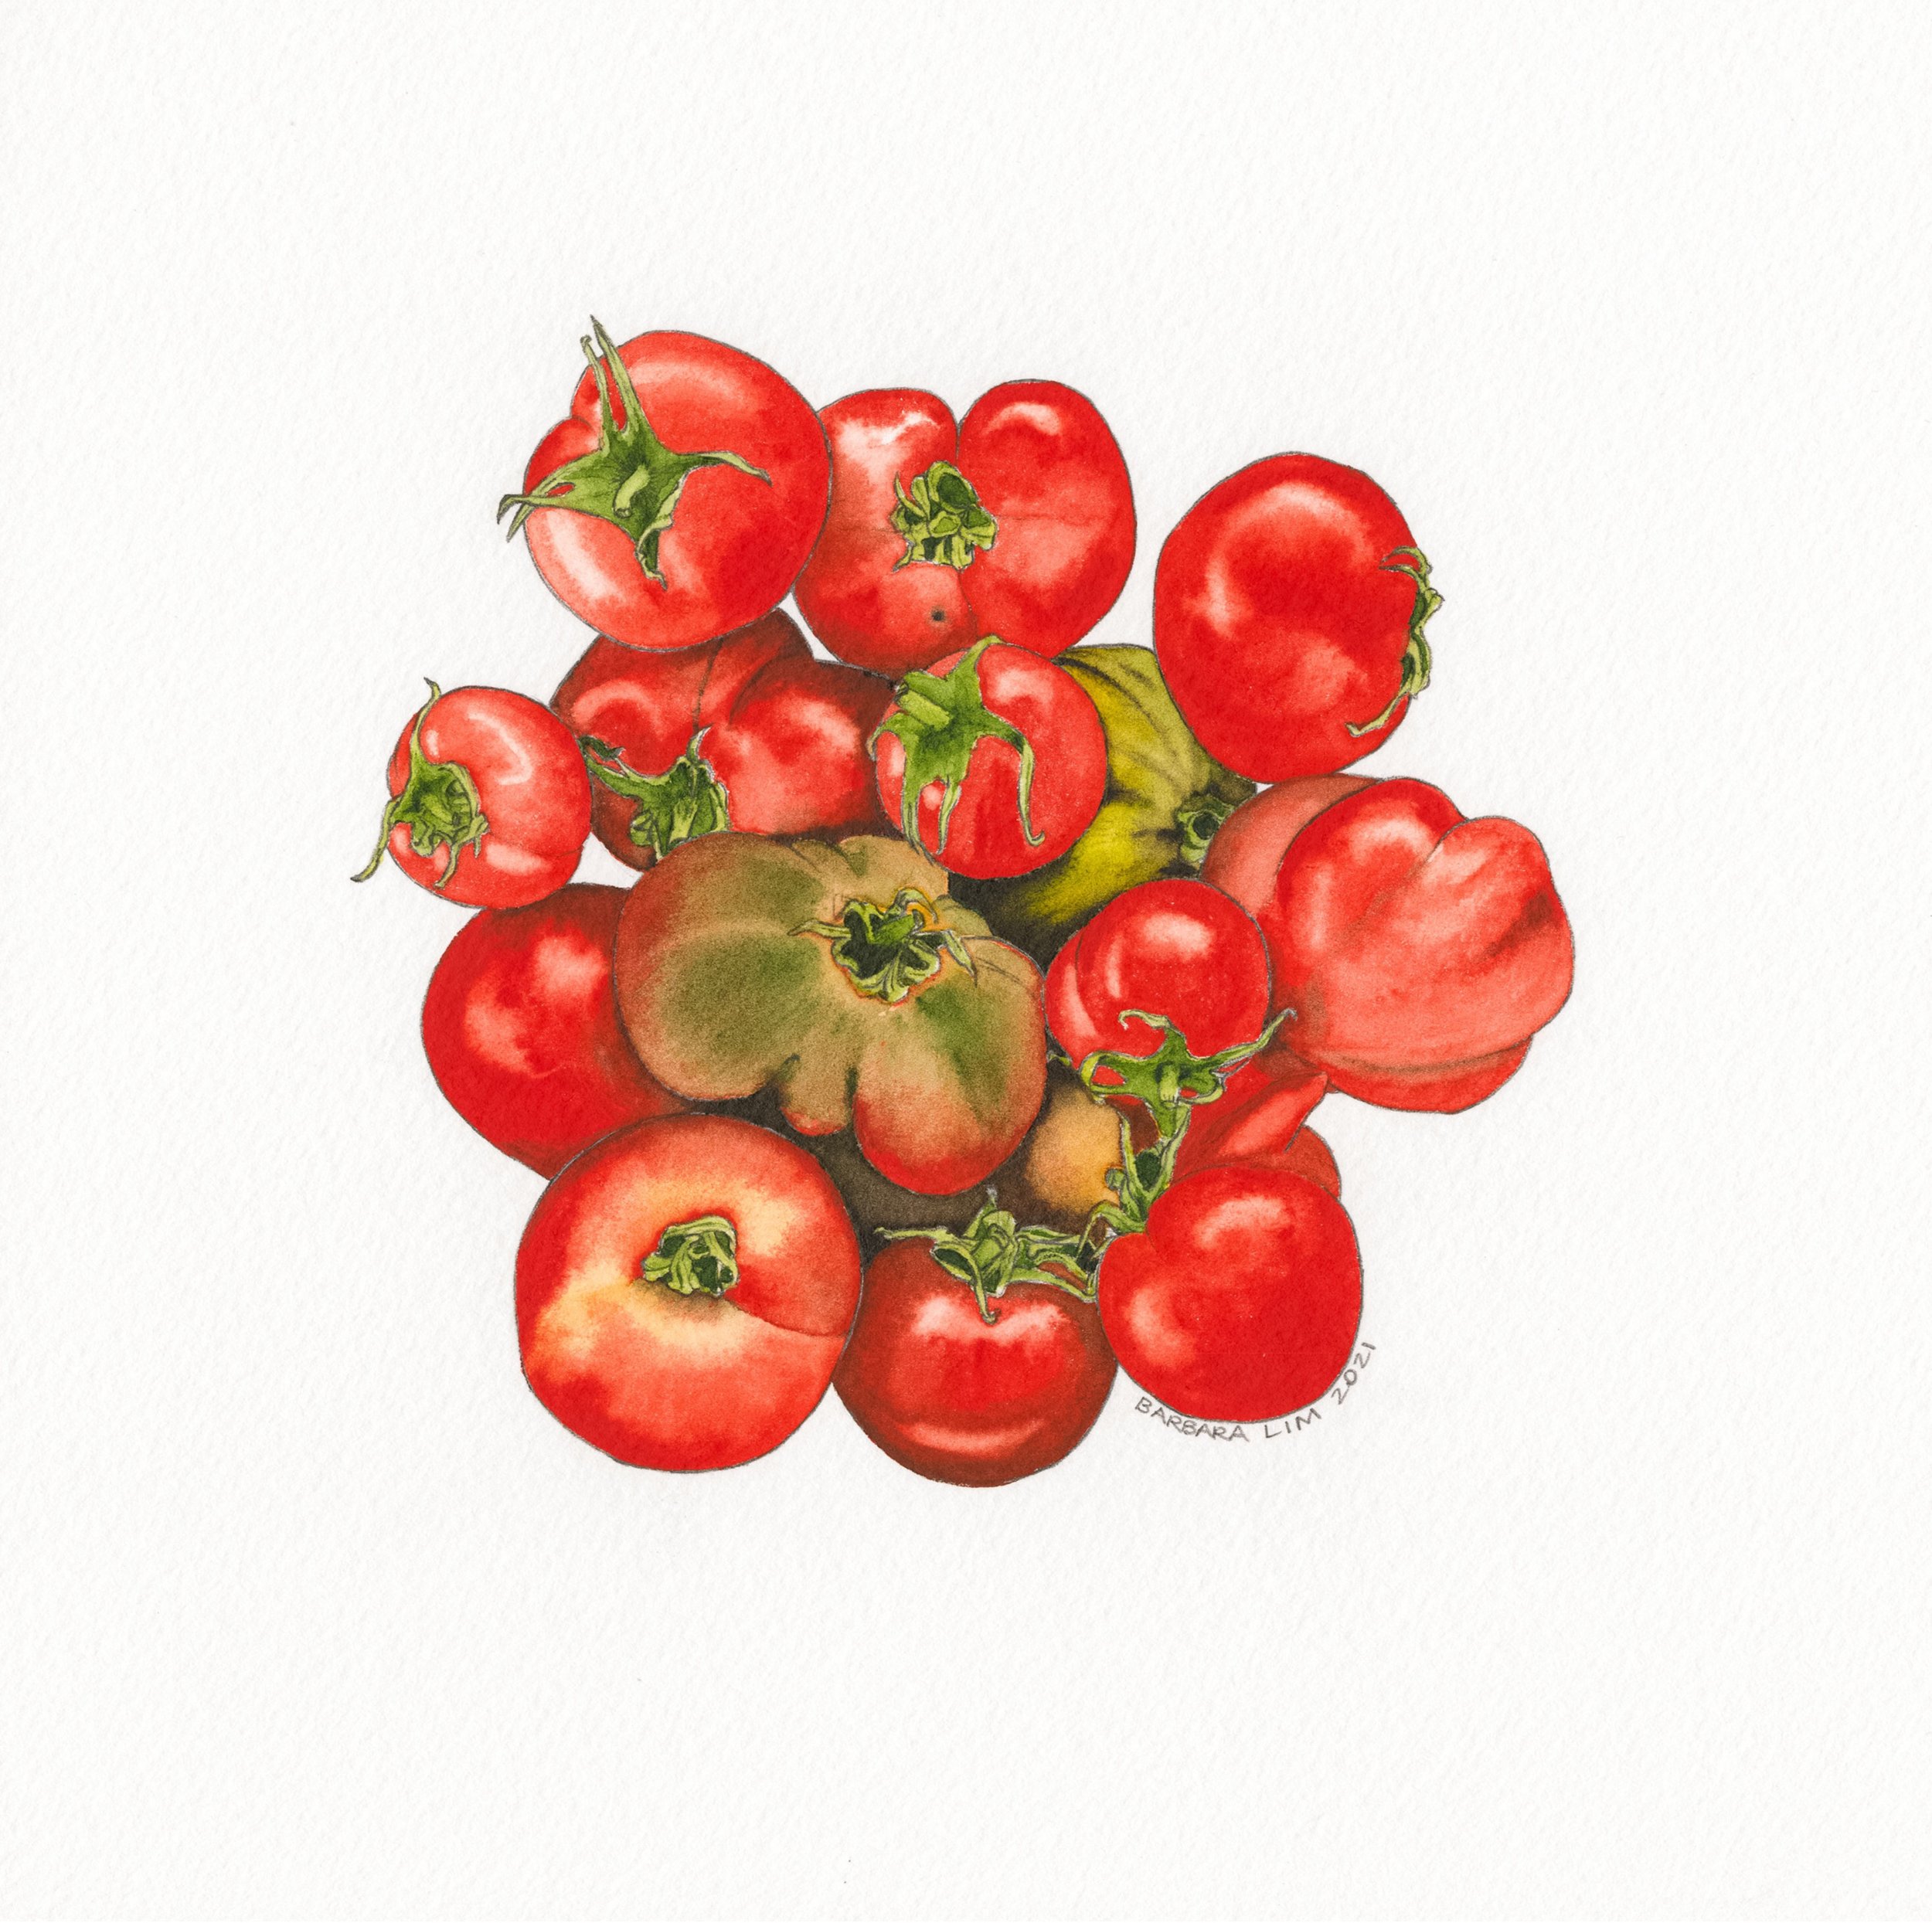 Tomatoes No. 9 by Barbara Lim